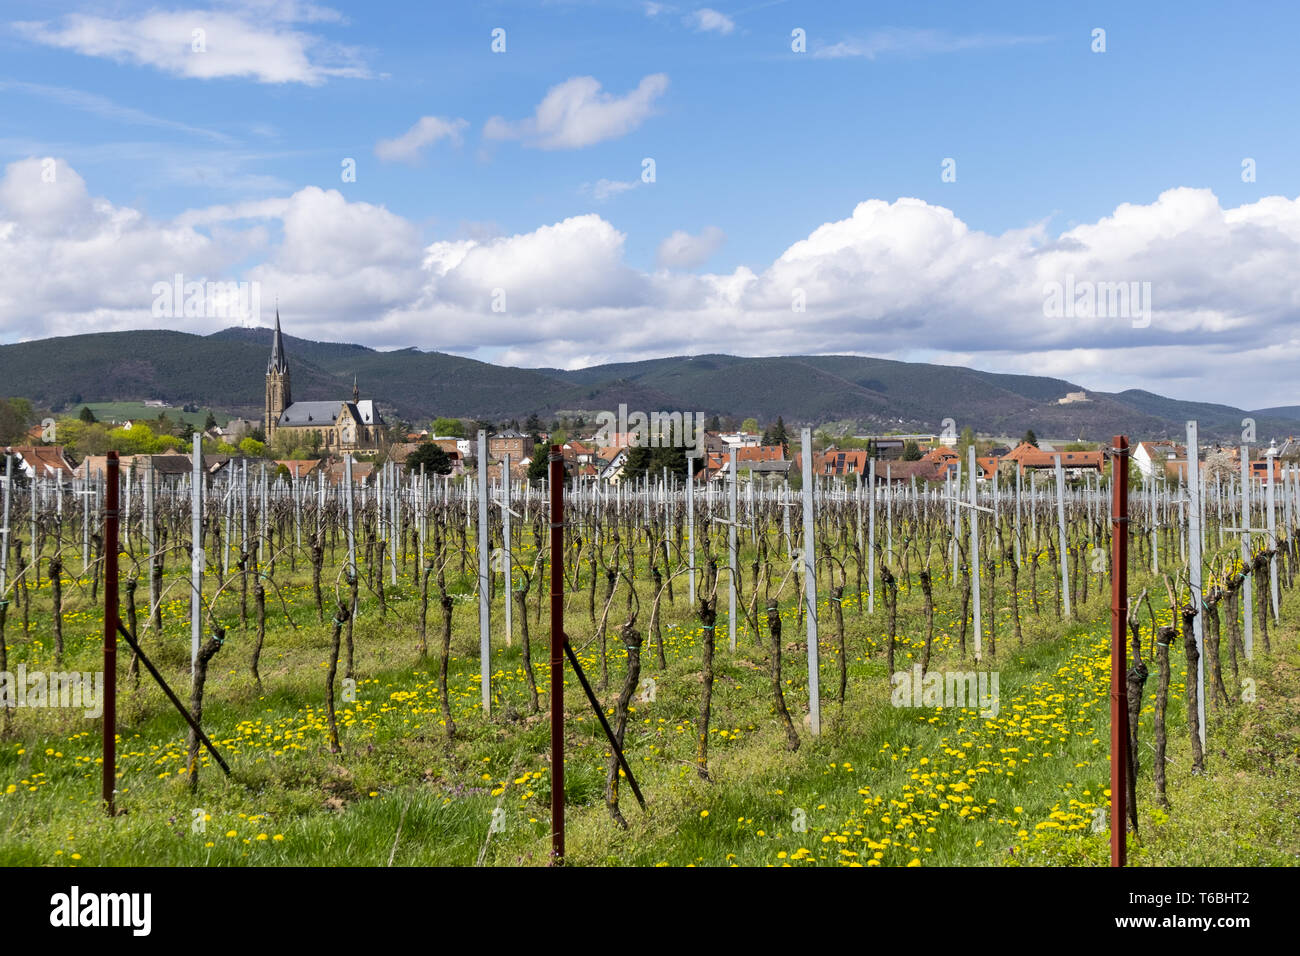 Wine village Birkweiler Stock Photo